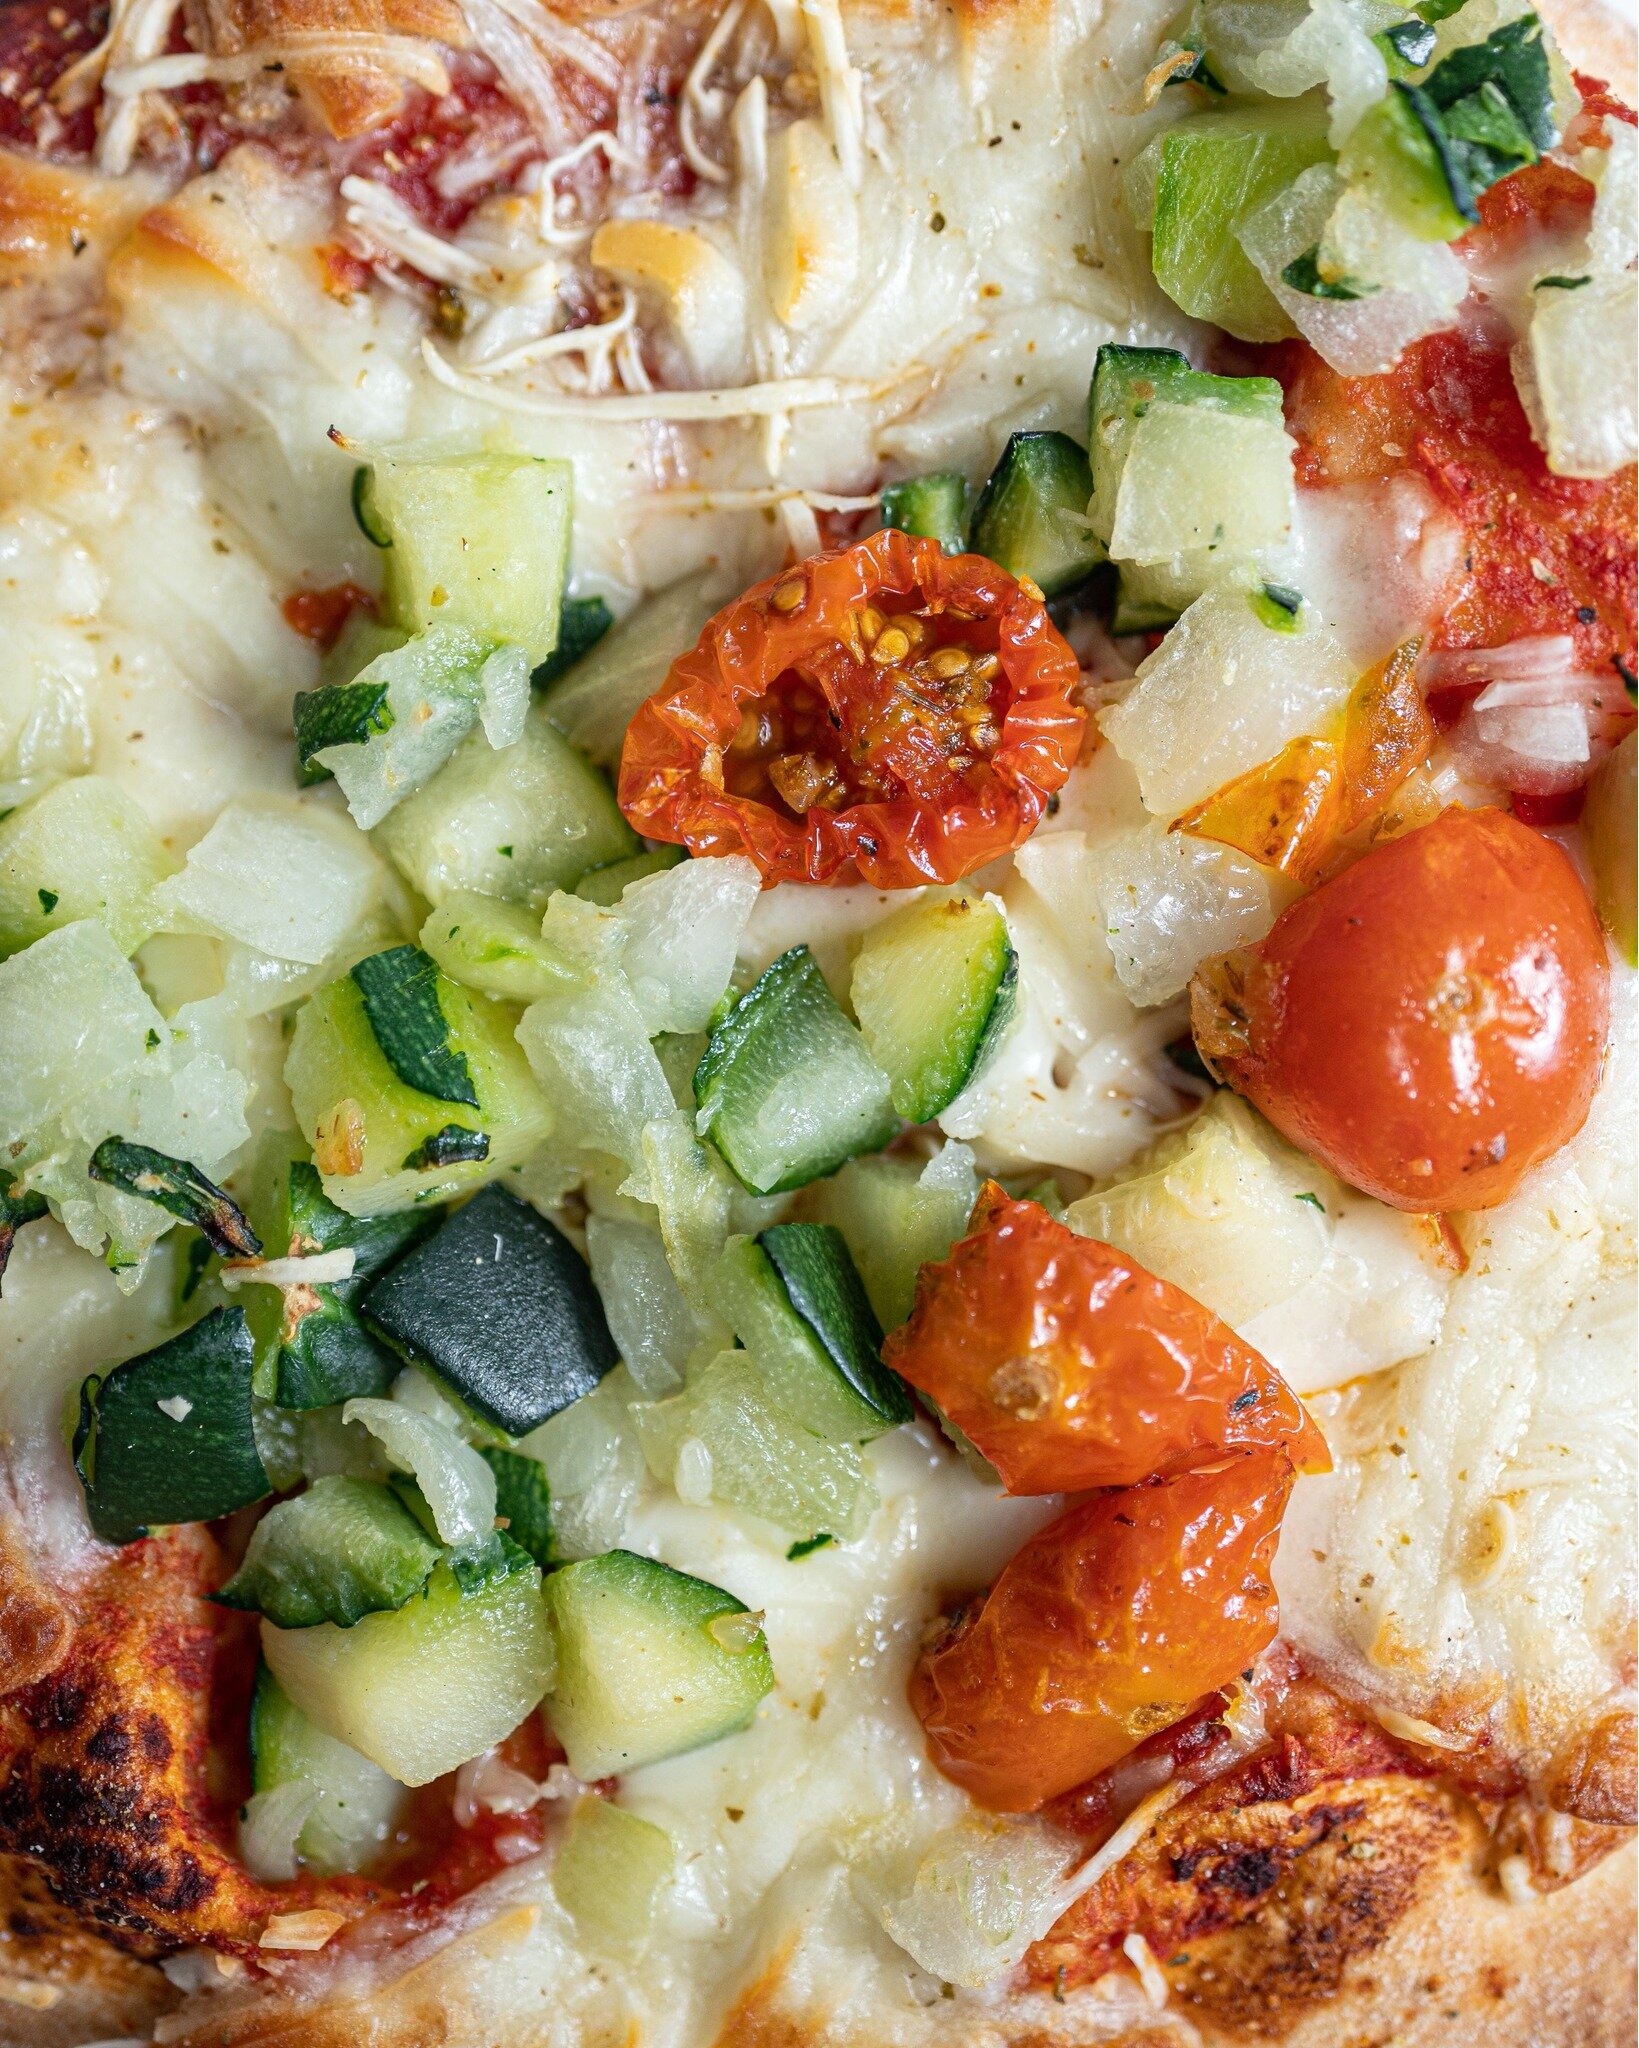 Zoom sur l&rsquo;une de nos pizzas pr&eacute;f&eacute;r&eacute;es, la v&eacute;g&eacute; ! 😍

Vous y trouverez&hellip;. de la sauce tomate, des d&eacute;s de courgette, de la mozzarella et de l&rsquo;emmental fran&ccedil;ais, et bien s&ucirc;r des t